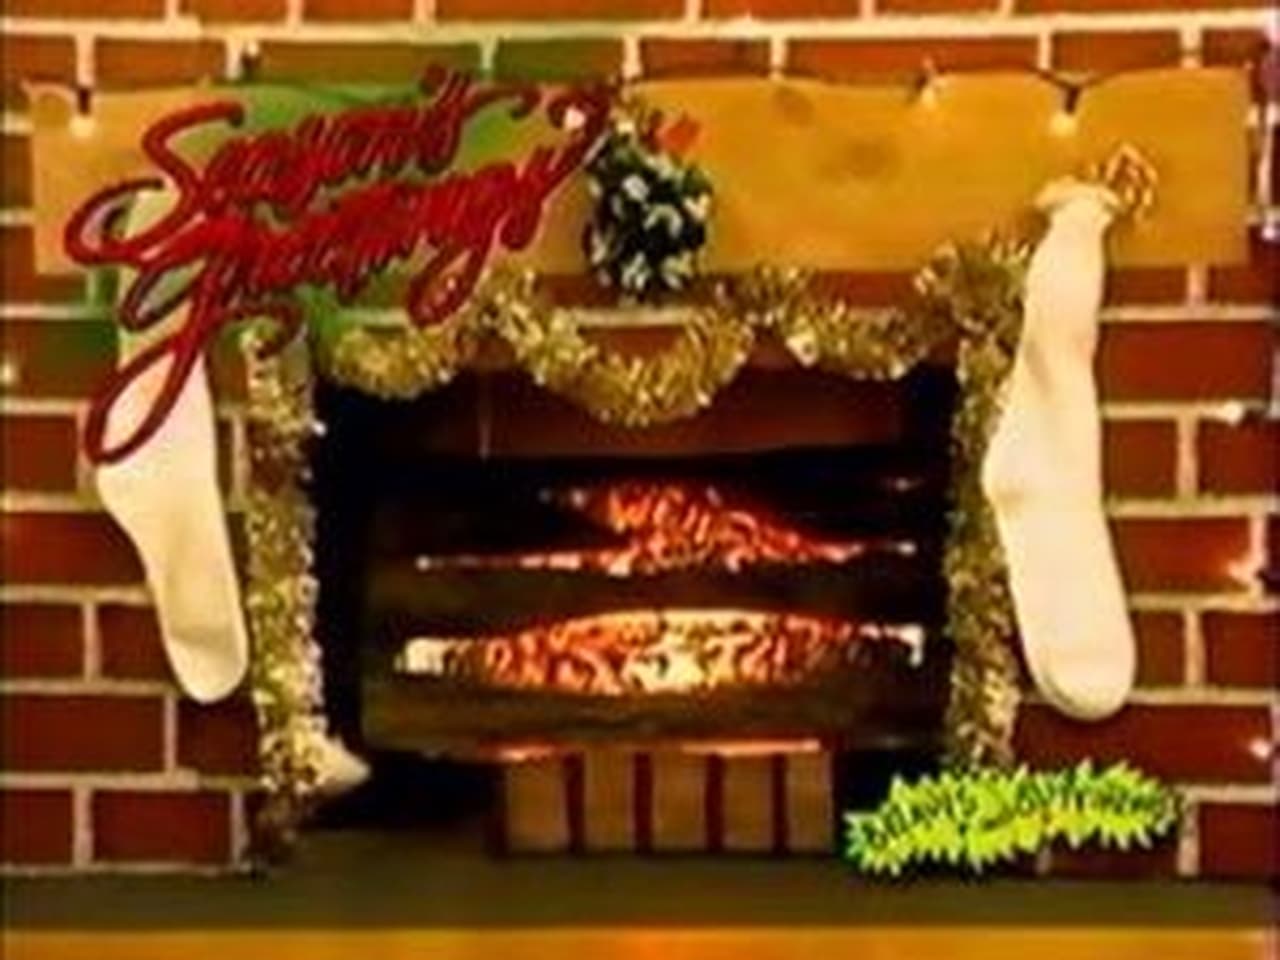 Beavis and Butt-Head - Season 3 Episode 26 : A Very Special Christmas With Beavis and Butt-head